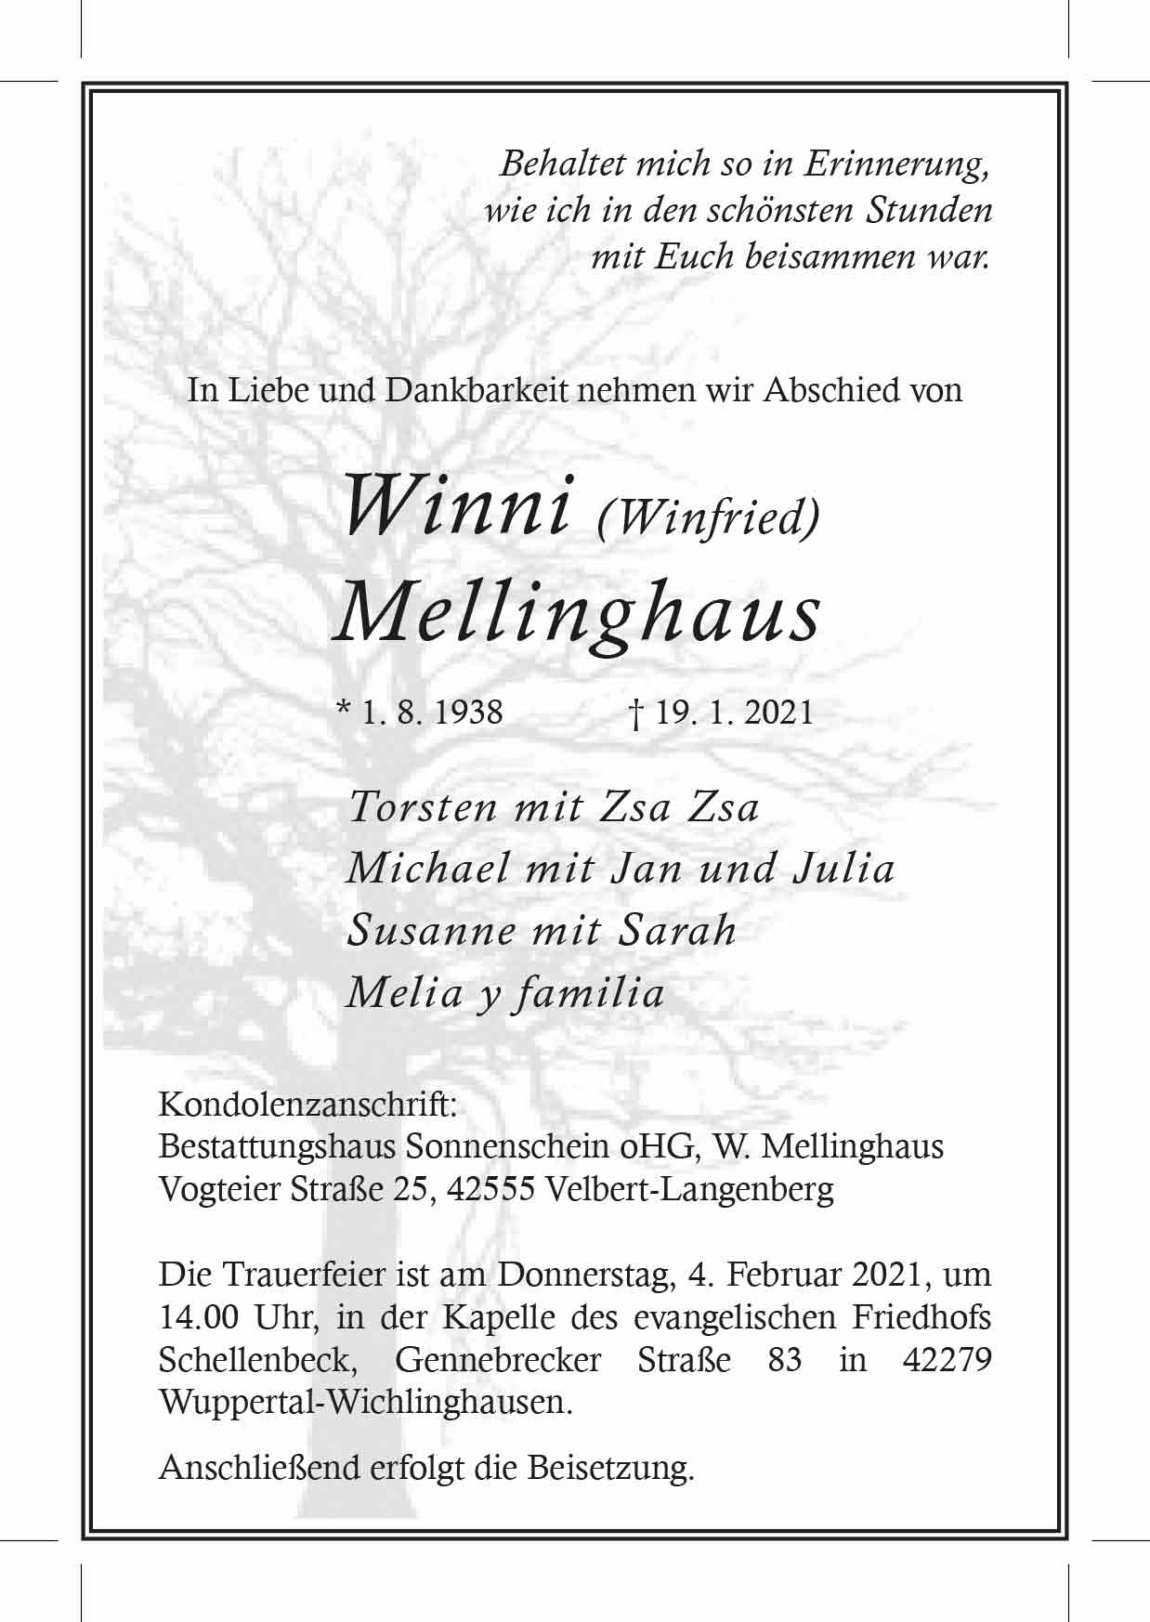 30.01.2021_Melliinghaus-Winni.jpg